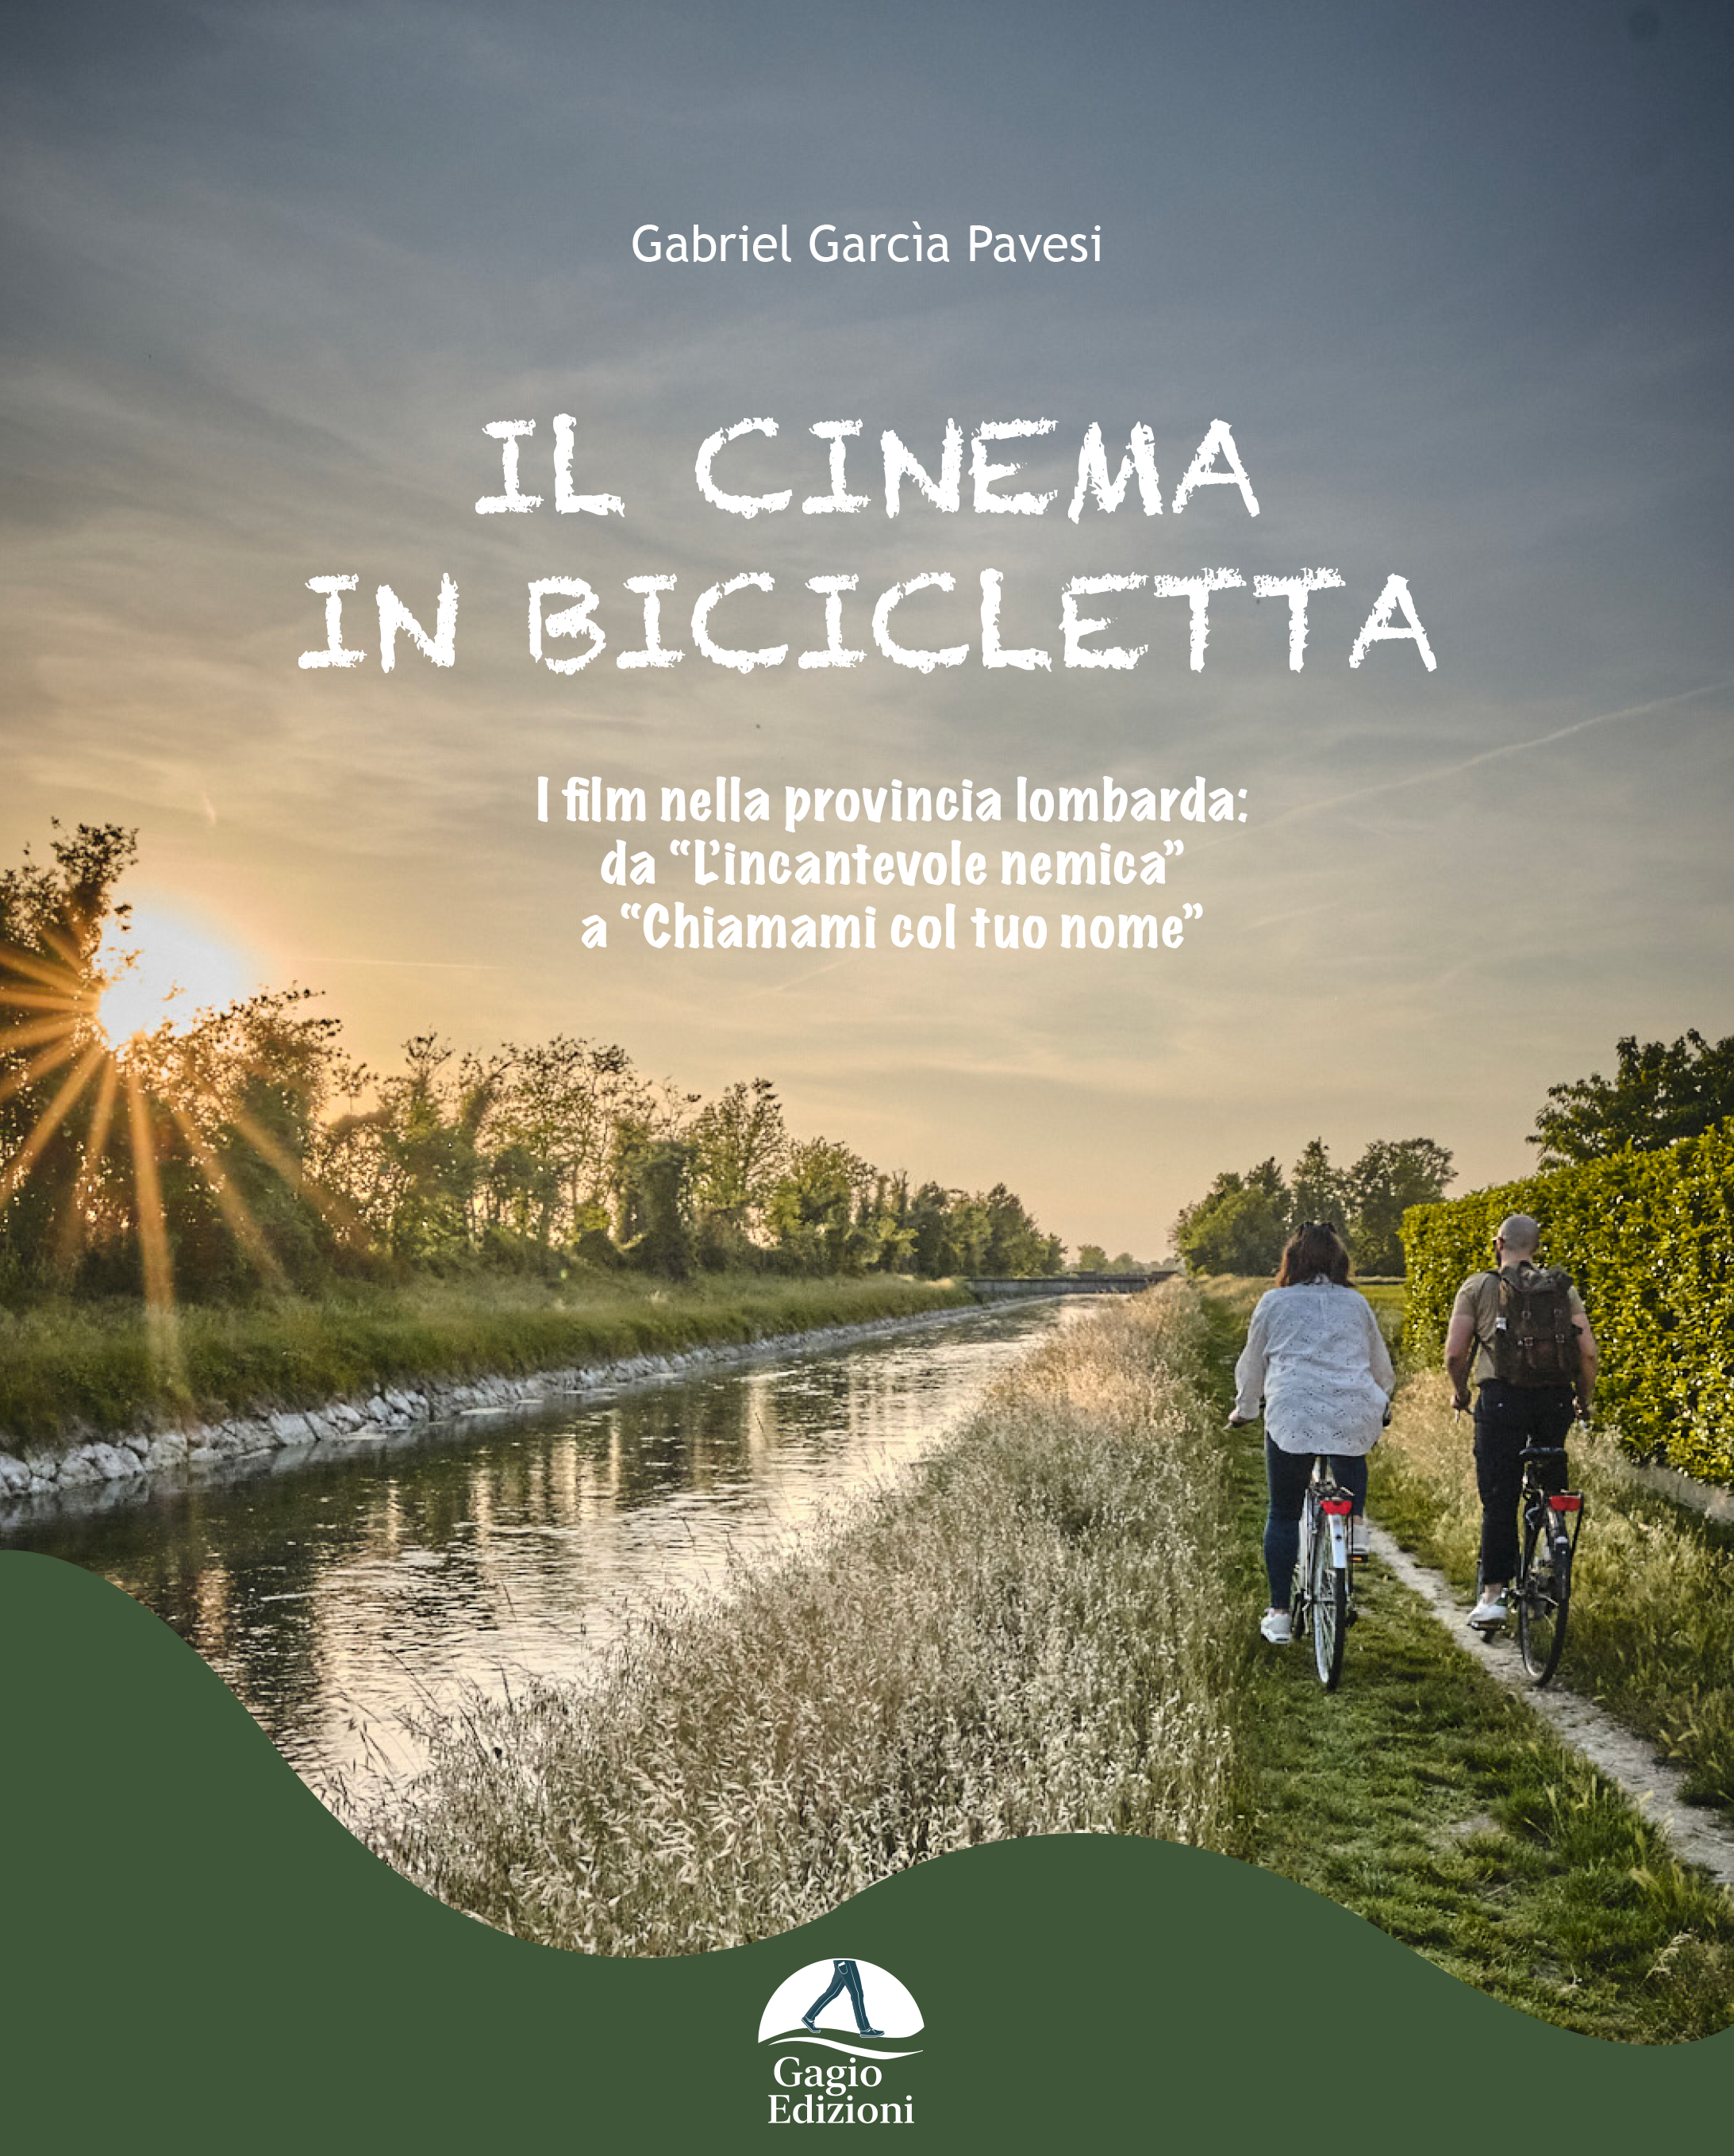 Novità editoriale per Gagio Edizioni. Il cinema in bicicletta